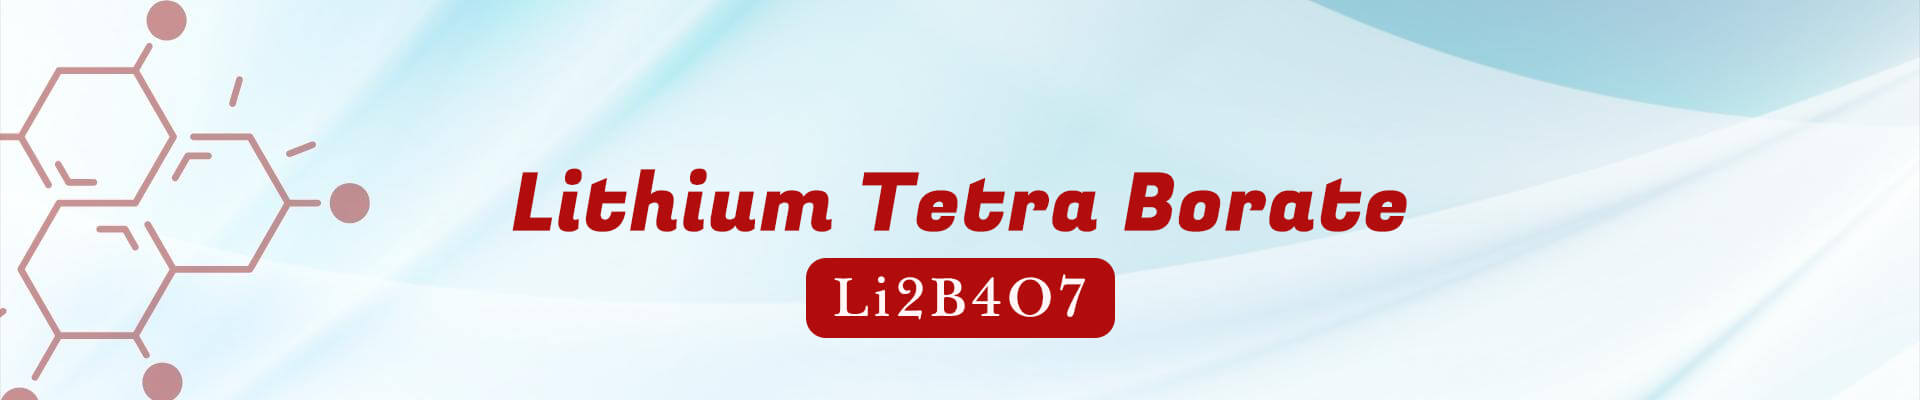 Lithium Tetra Borate